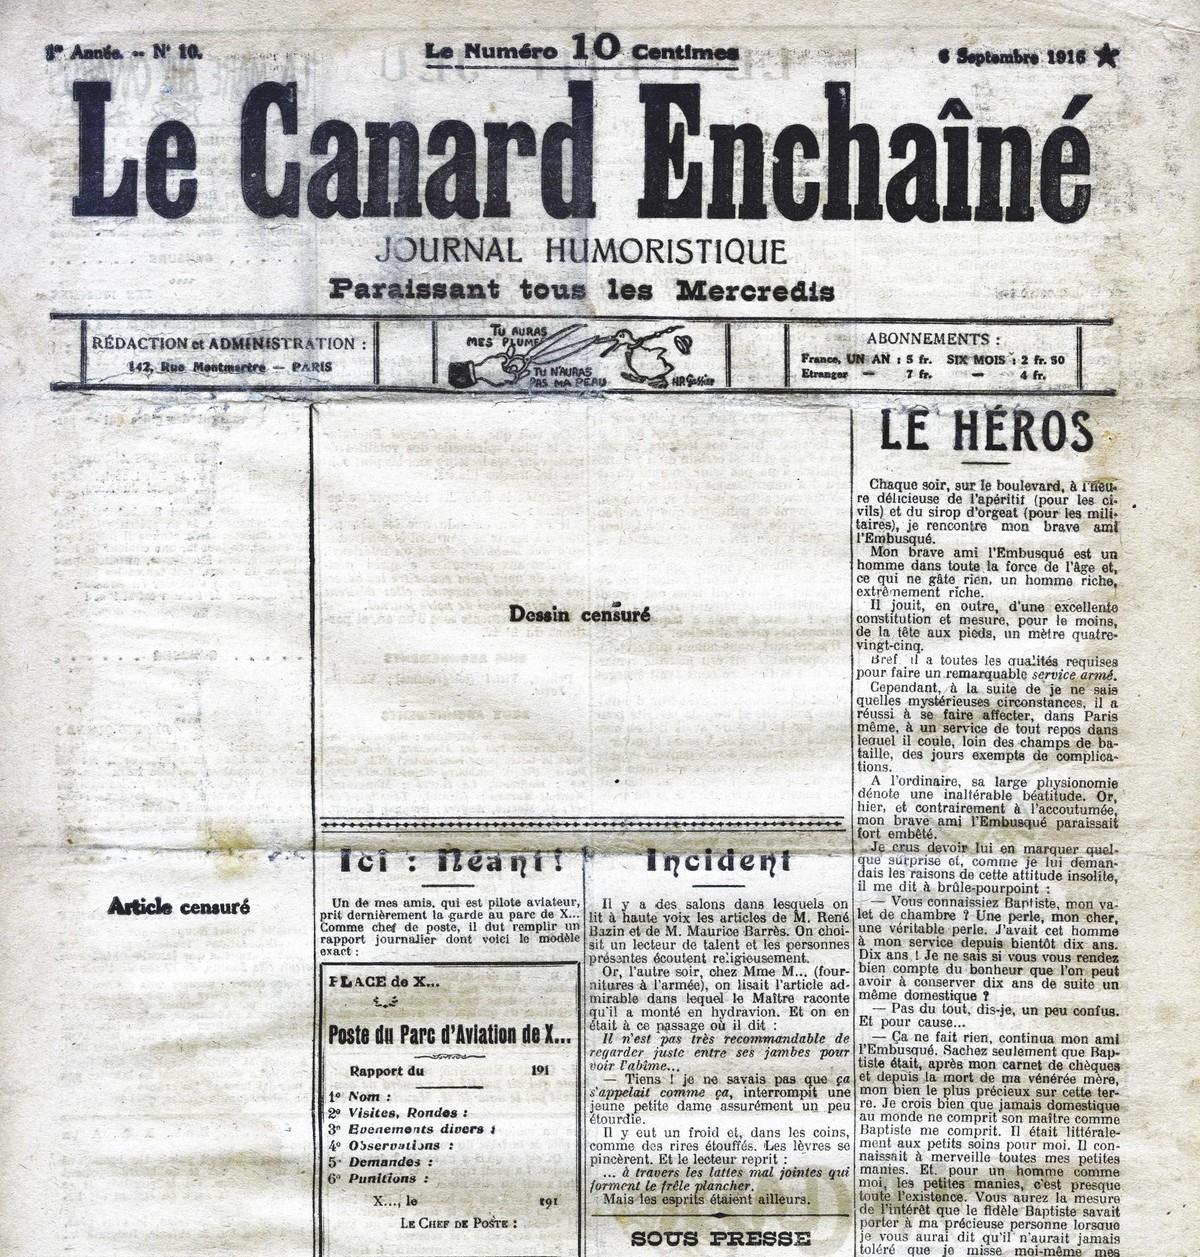 Une du journal Le Canard Enchaîné, septembre 1916.